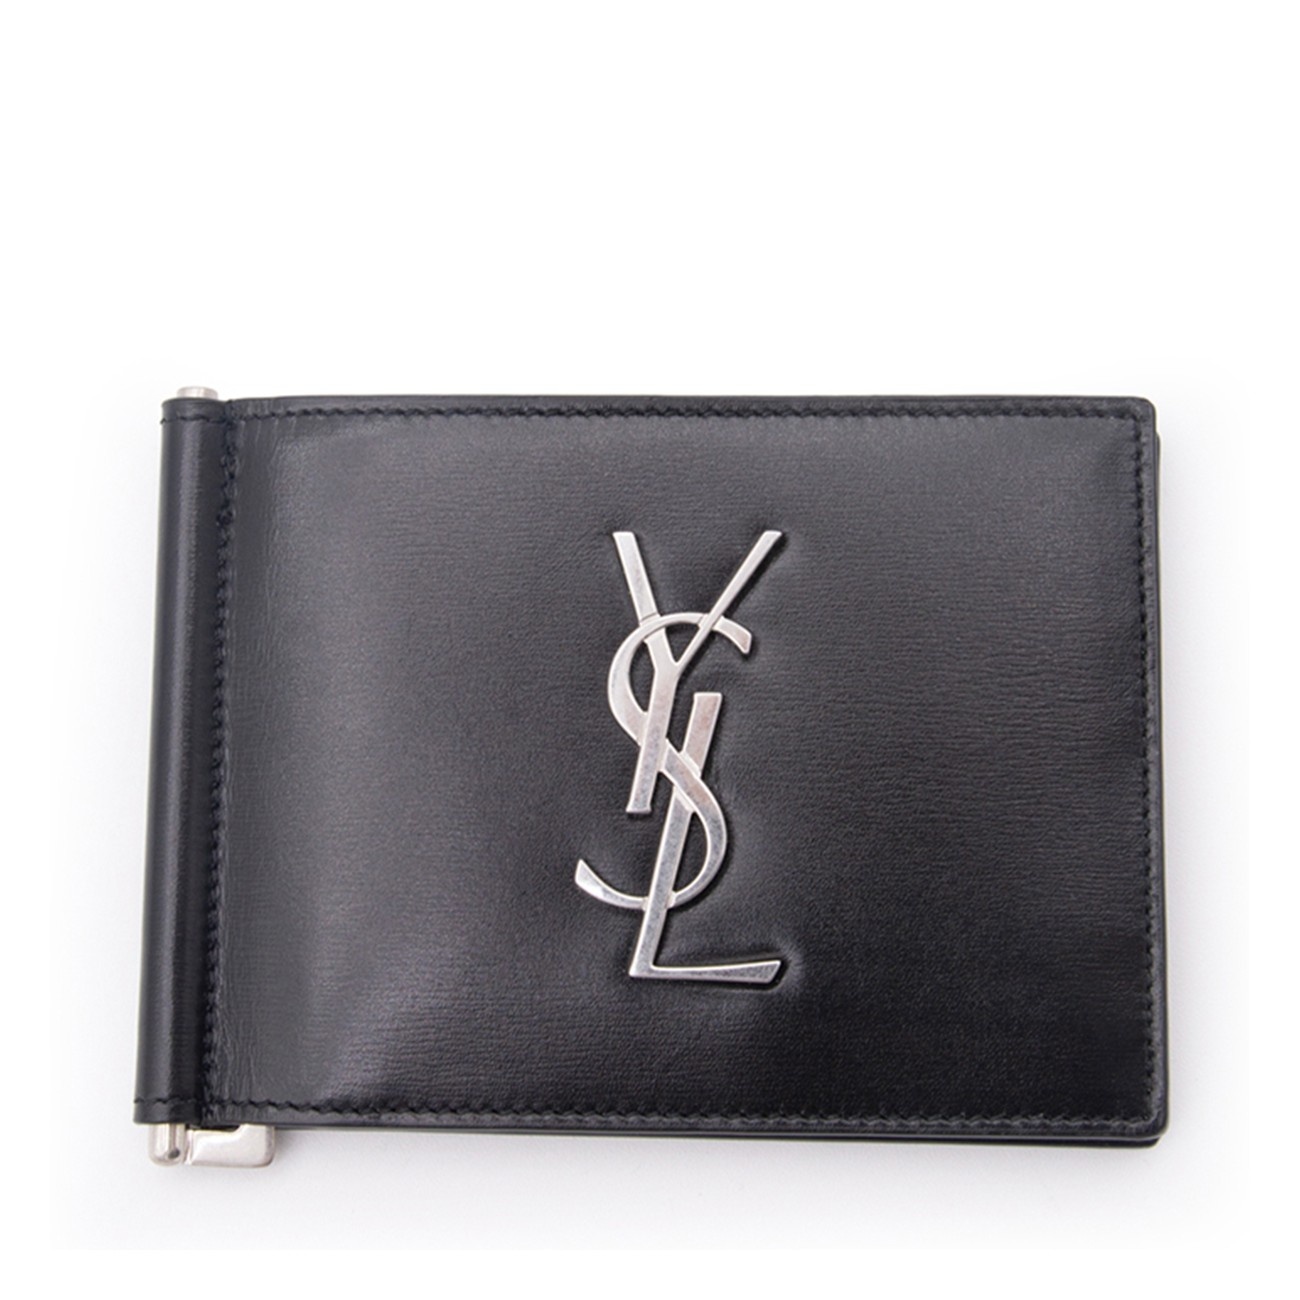 black leather card holder - 1